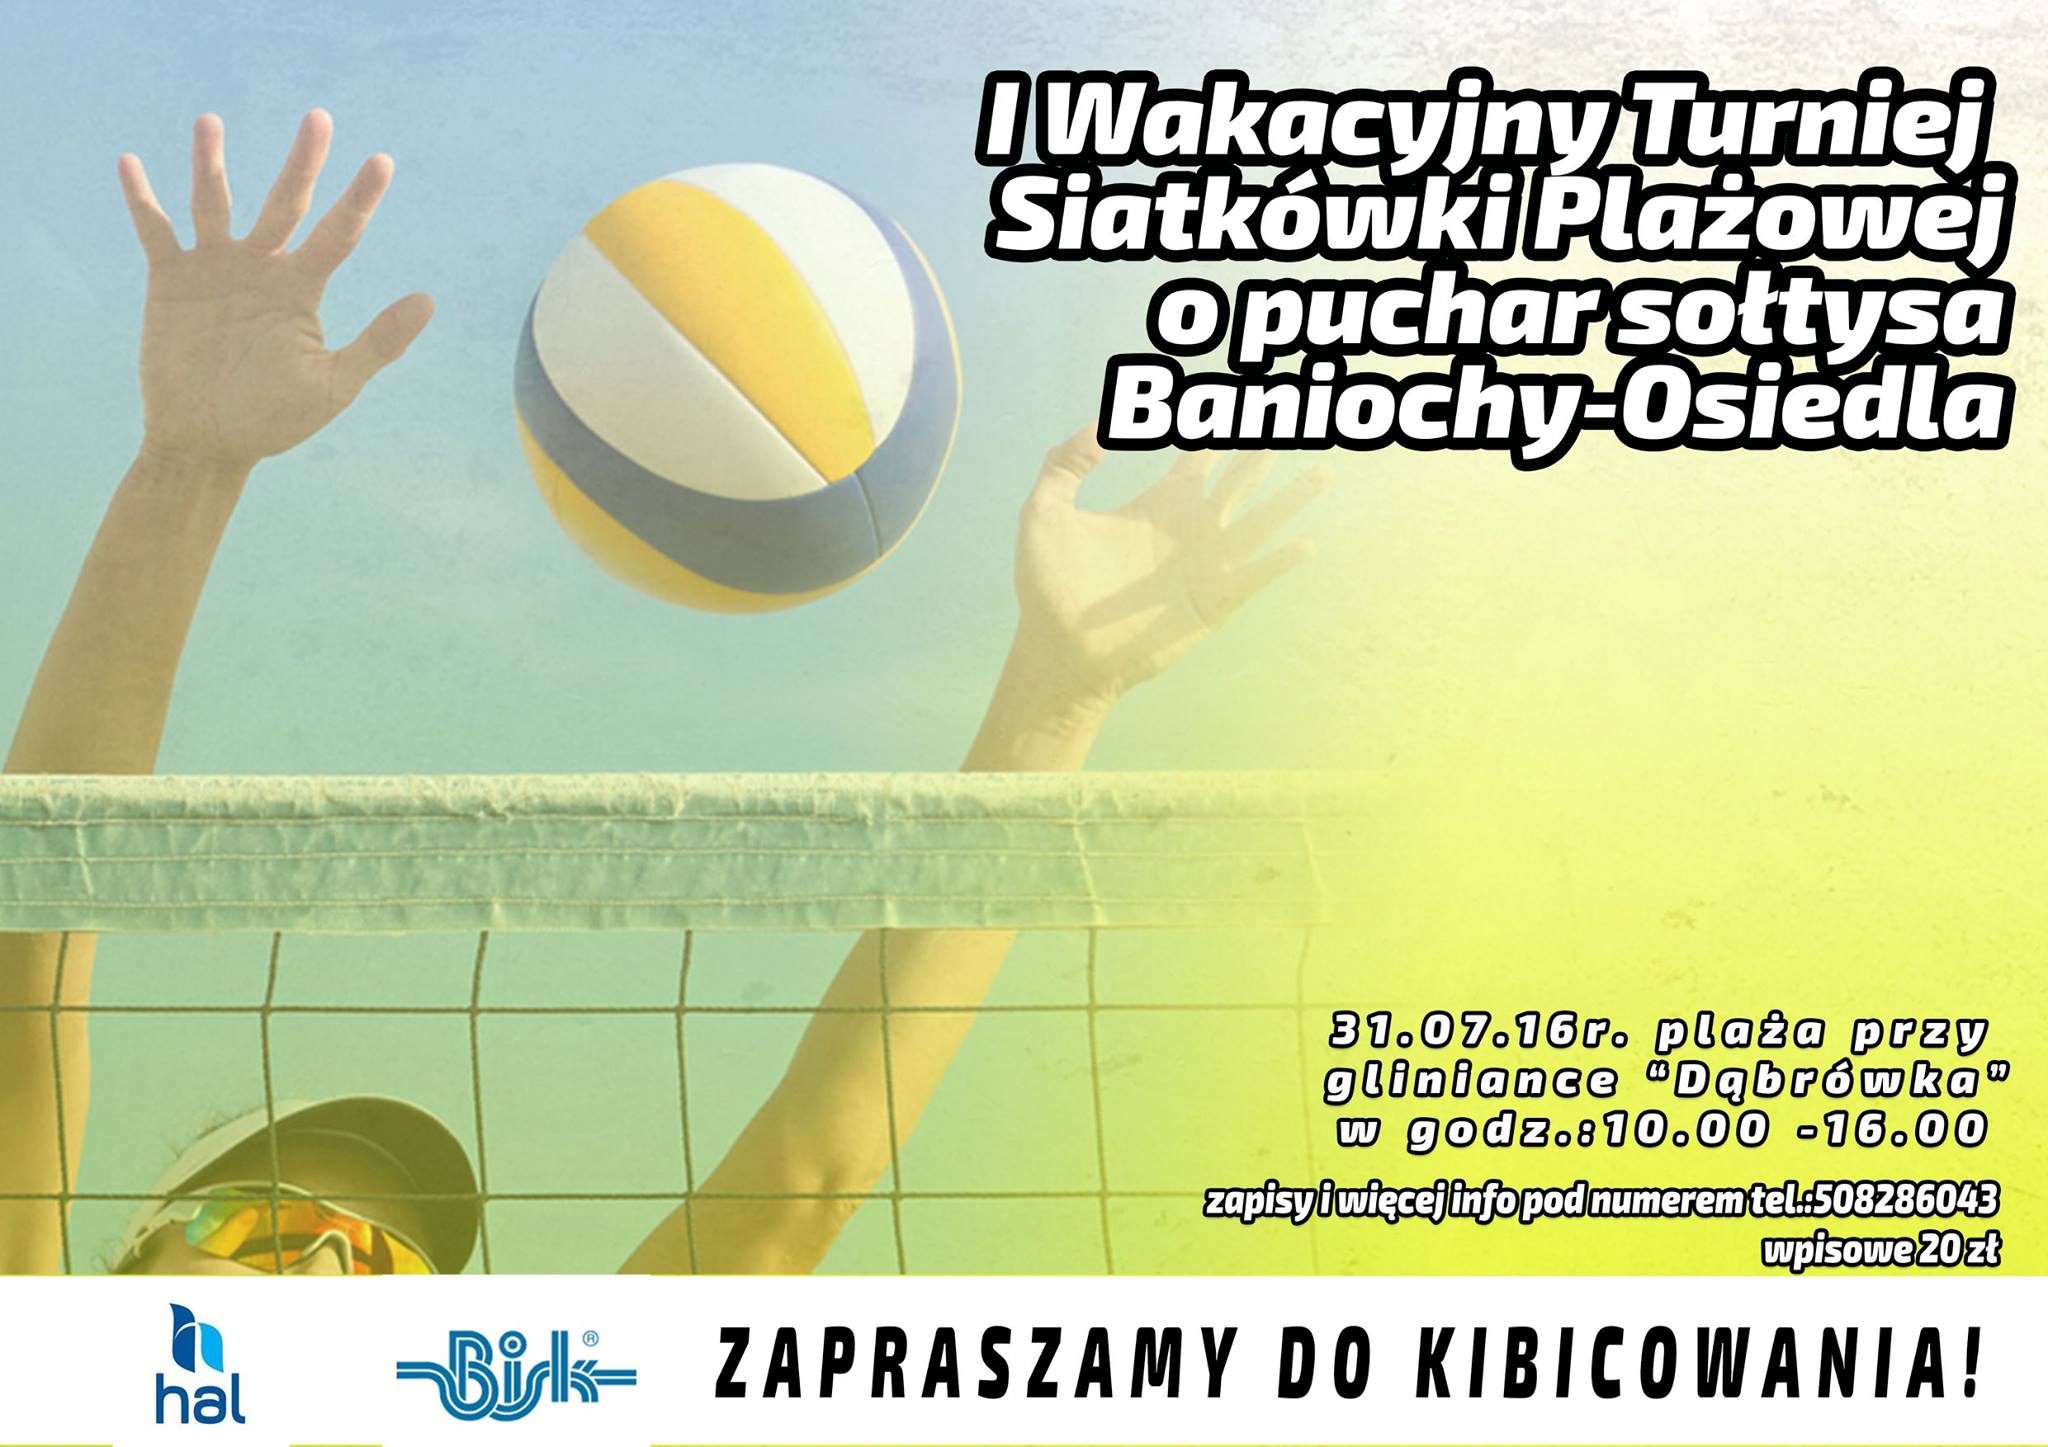 I Wakacyjny Turniej Siatkówki Plażowej o Puchar Sołtysa Baniochy-Osiedle